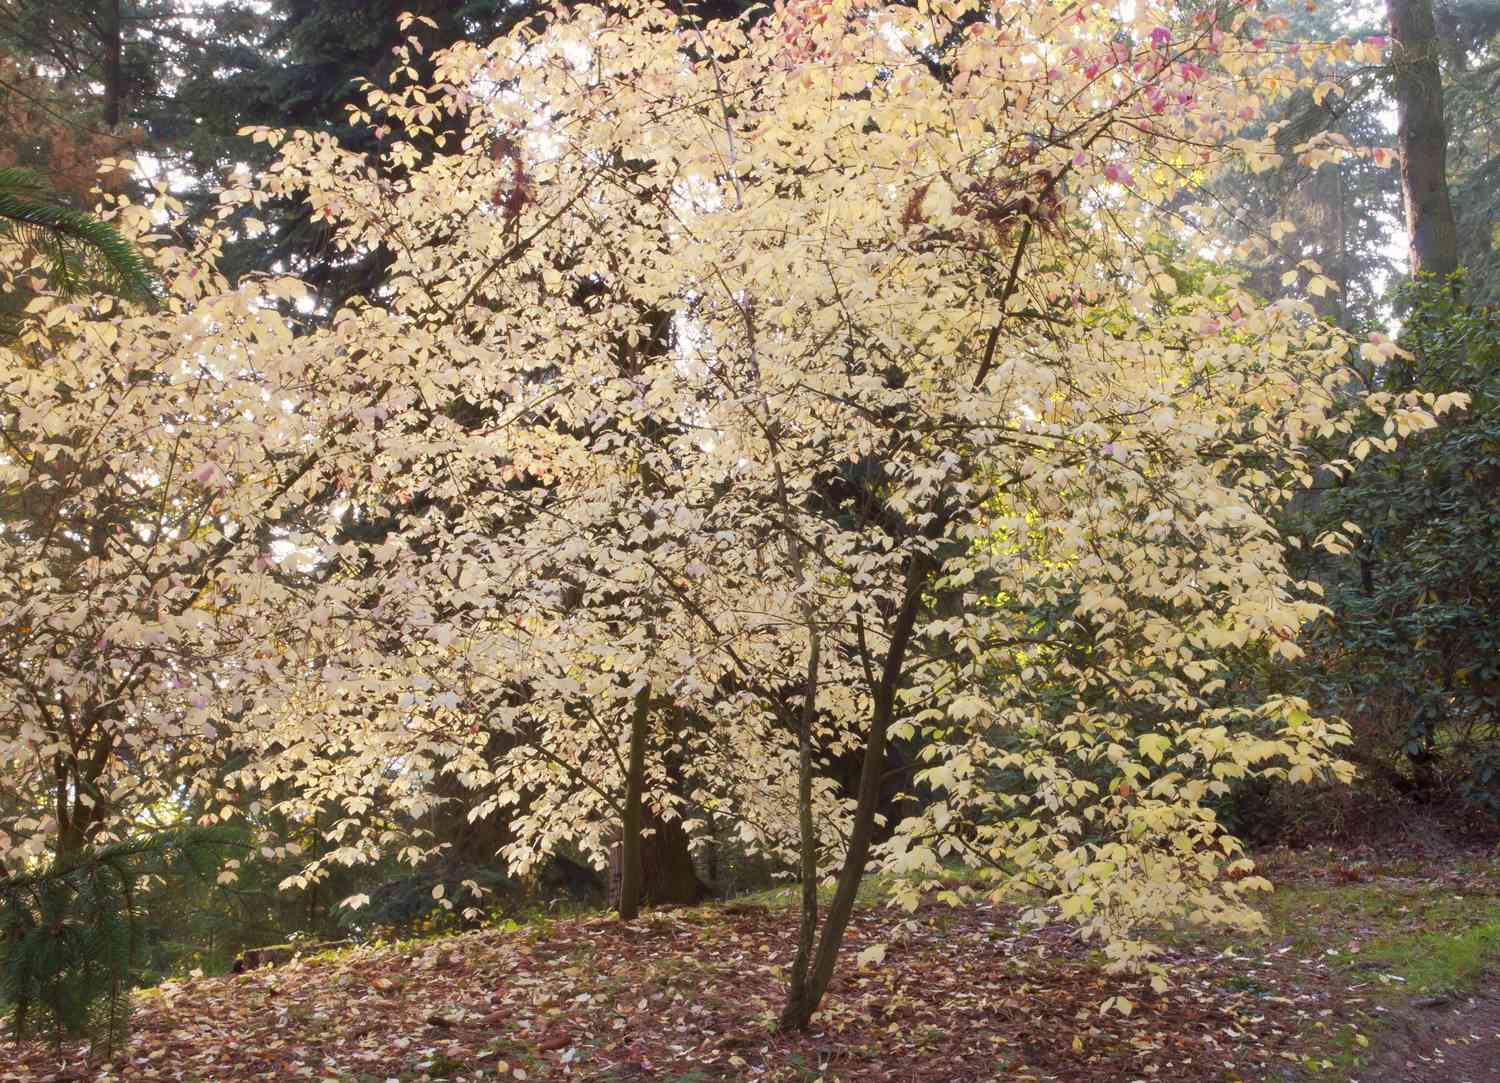 Europäischer Spindelbaum mit gelben Blättern im Wald